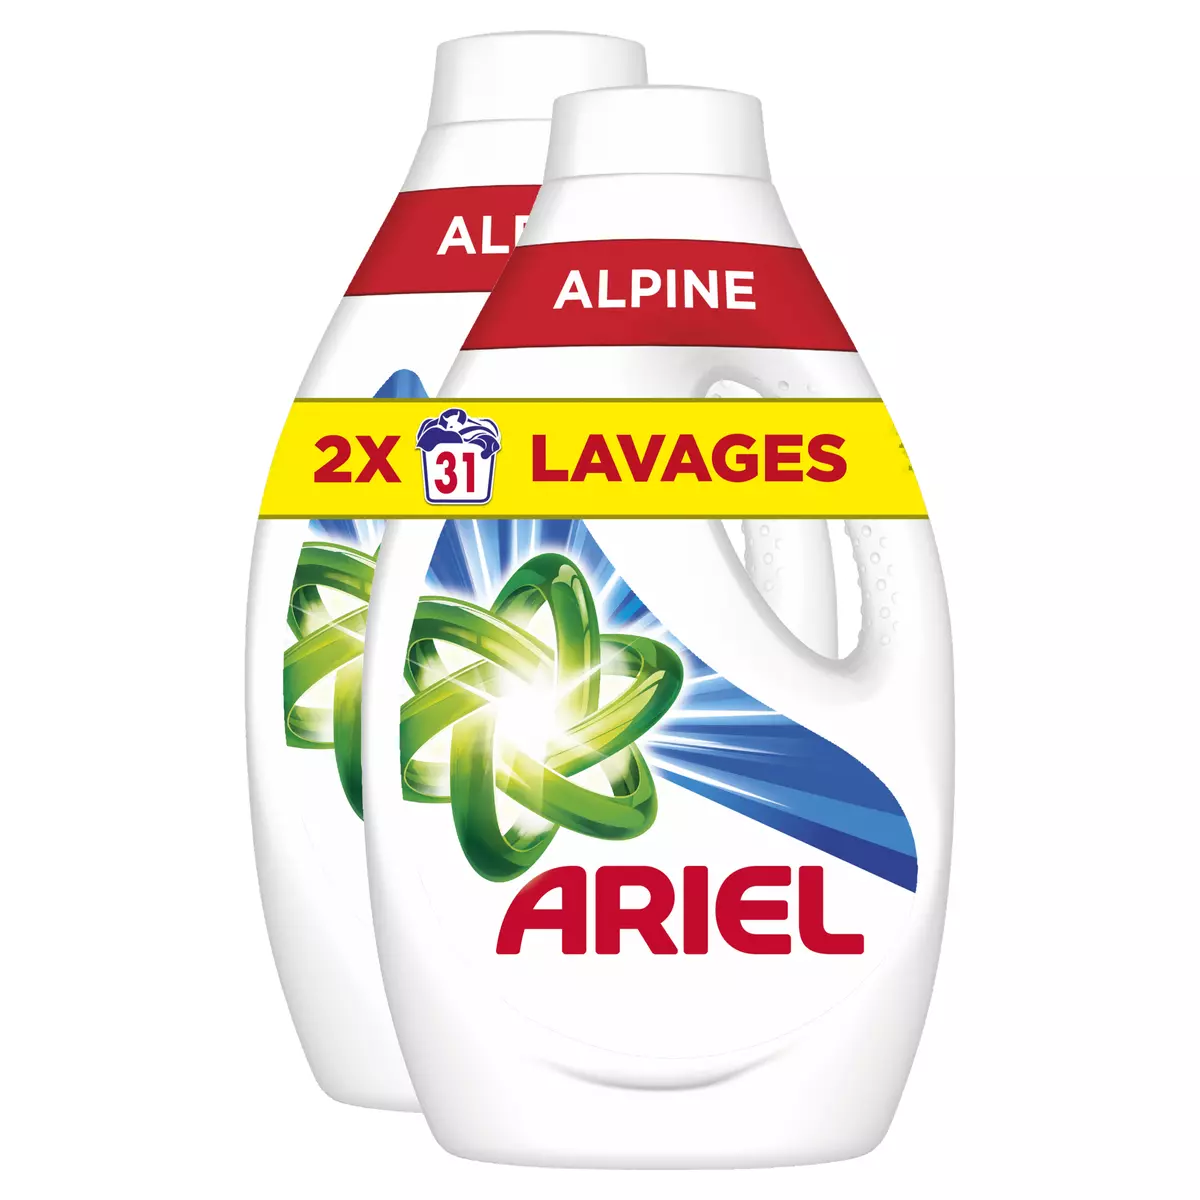 ARIEL Lessive liquide alpine 2x31 lavages 2x1.55l